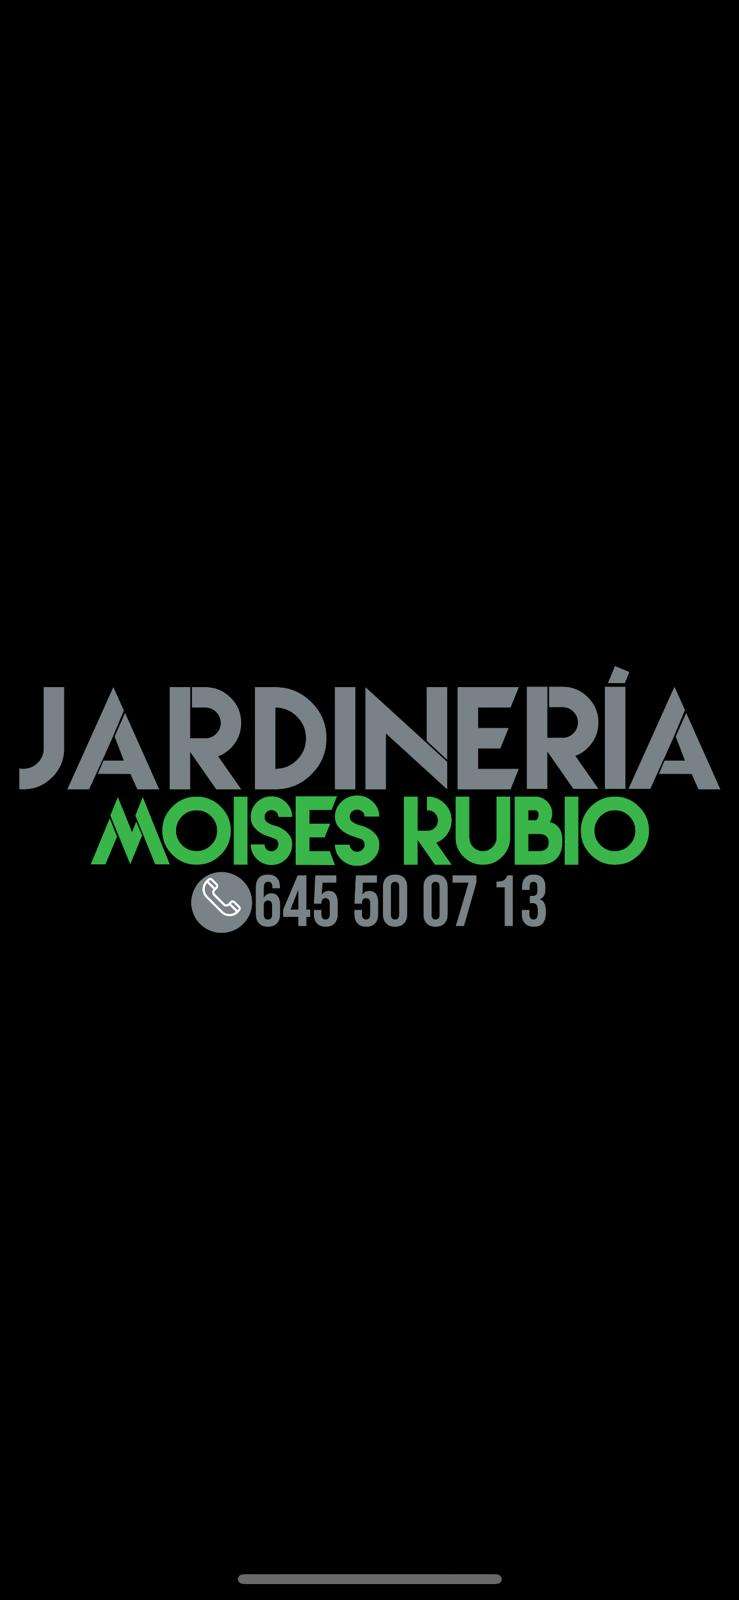 JARDINERÍA MOISÉS RUBIO